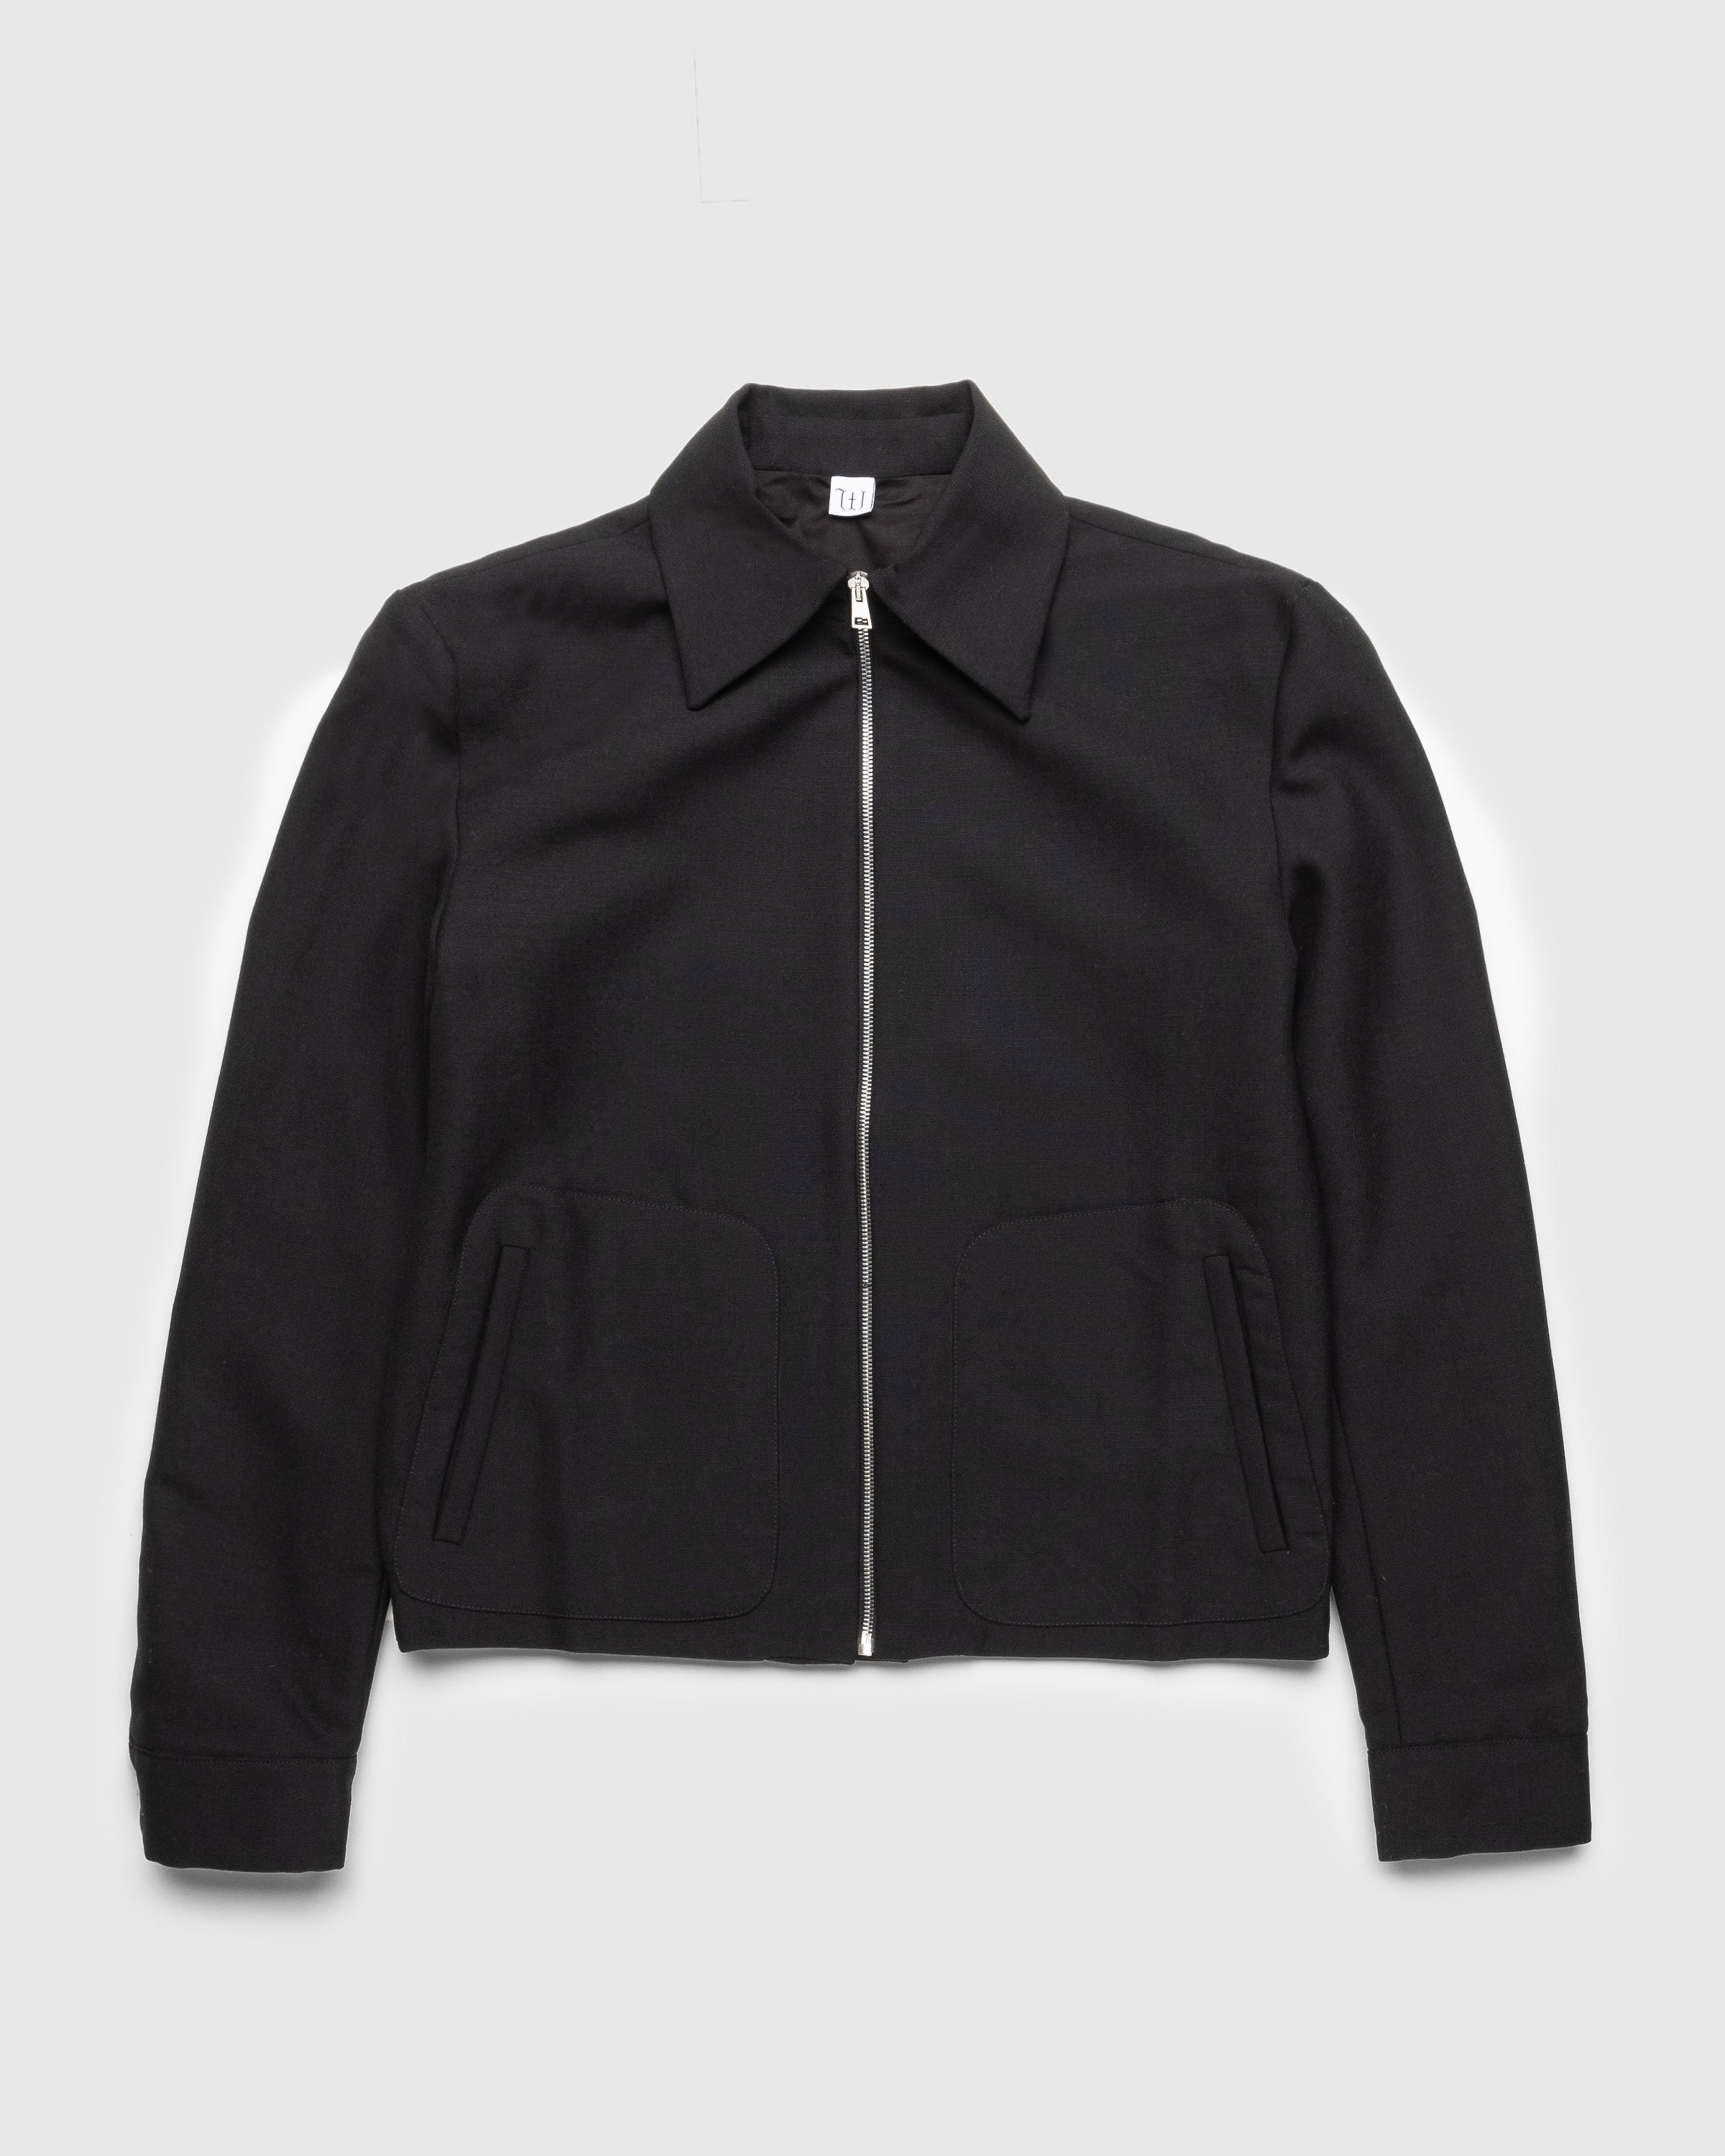 Winnie New York – Classic Zip-Up Jacket Black | Highsnobiety Shop